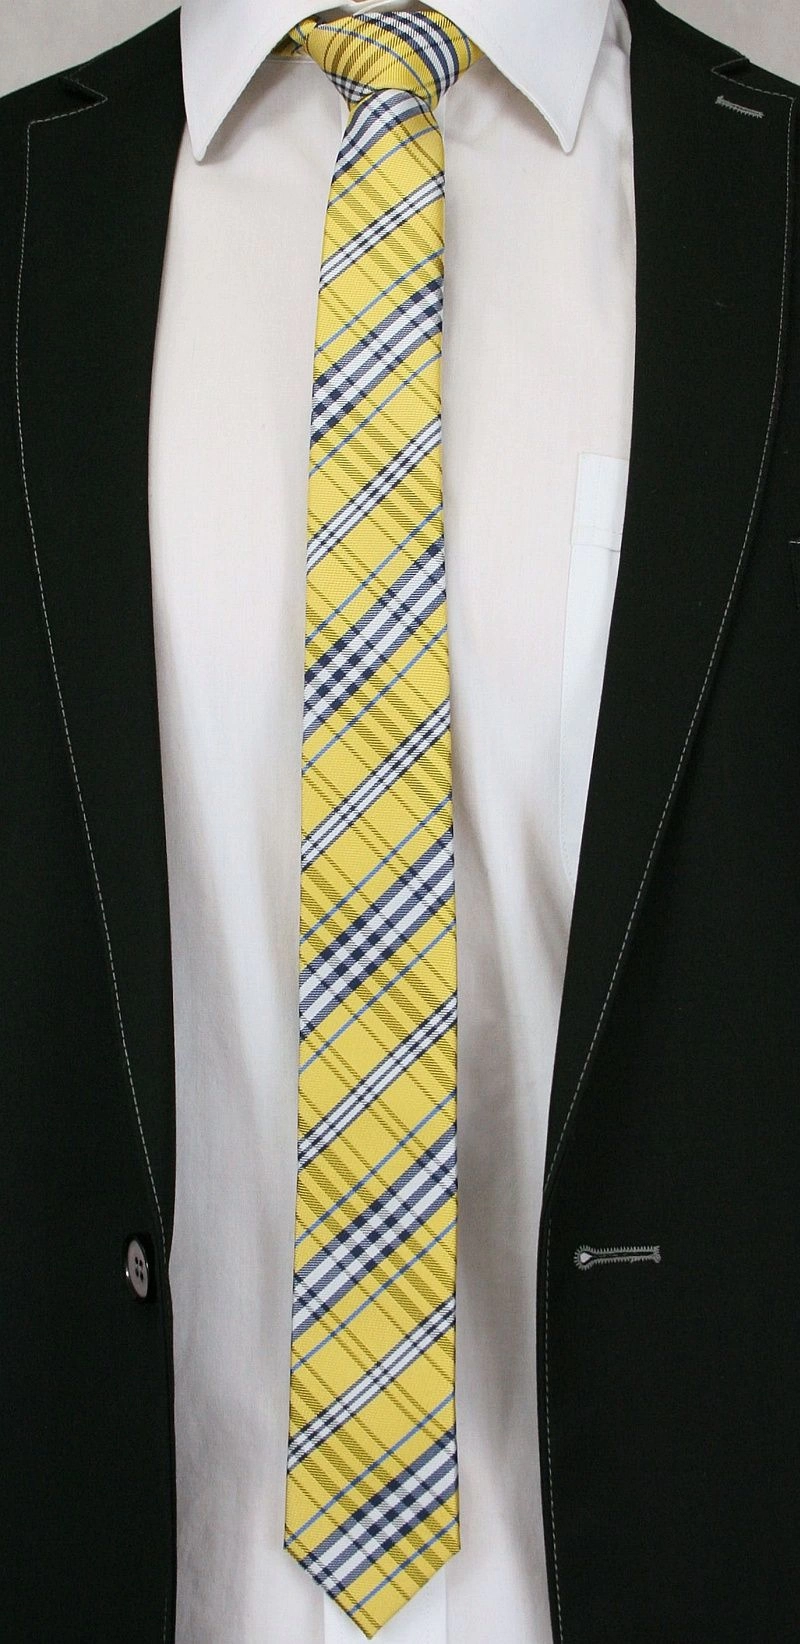 Żółty Stylowy Krawat (Śledź) Męski -ALTIES- 5 cm, Wąski, w Szkocką Kratkę